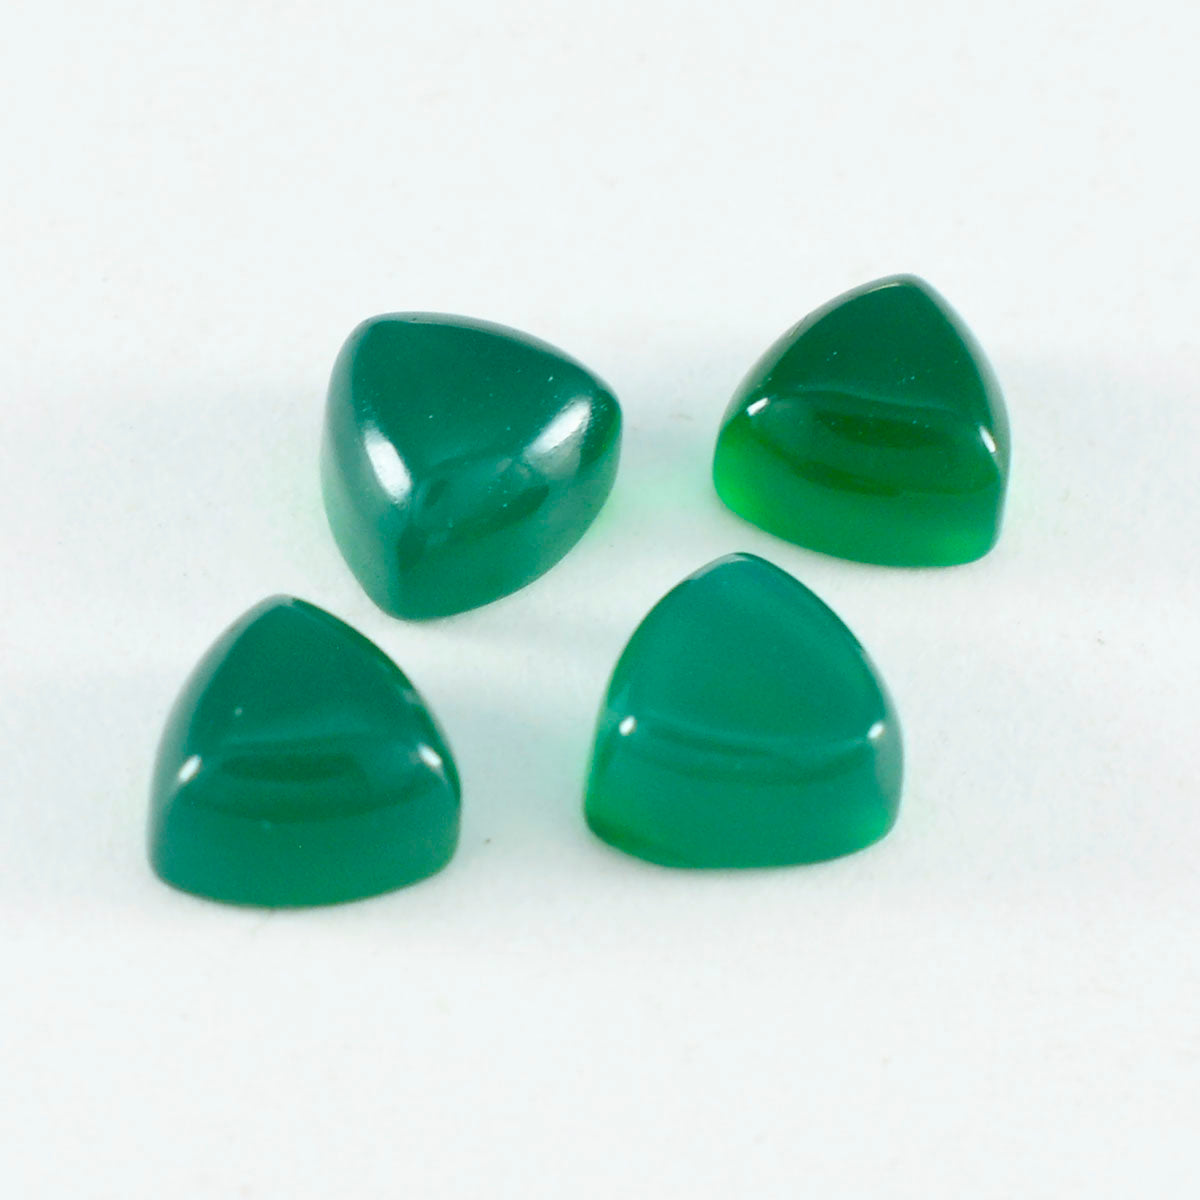 Riyogems 1 Stück grüner Onyx-Cabochon, 15 x 15 mm, Billionenform, erstaunlicher Qualitätsstein